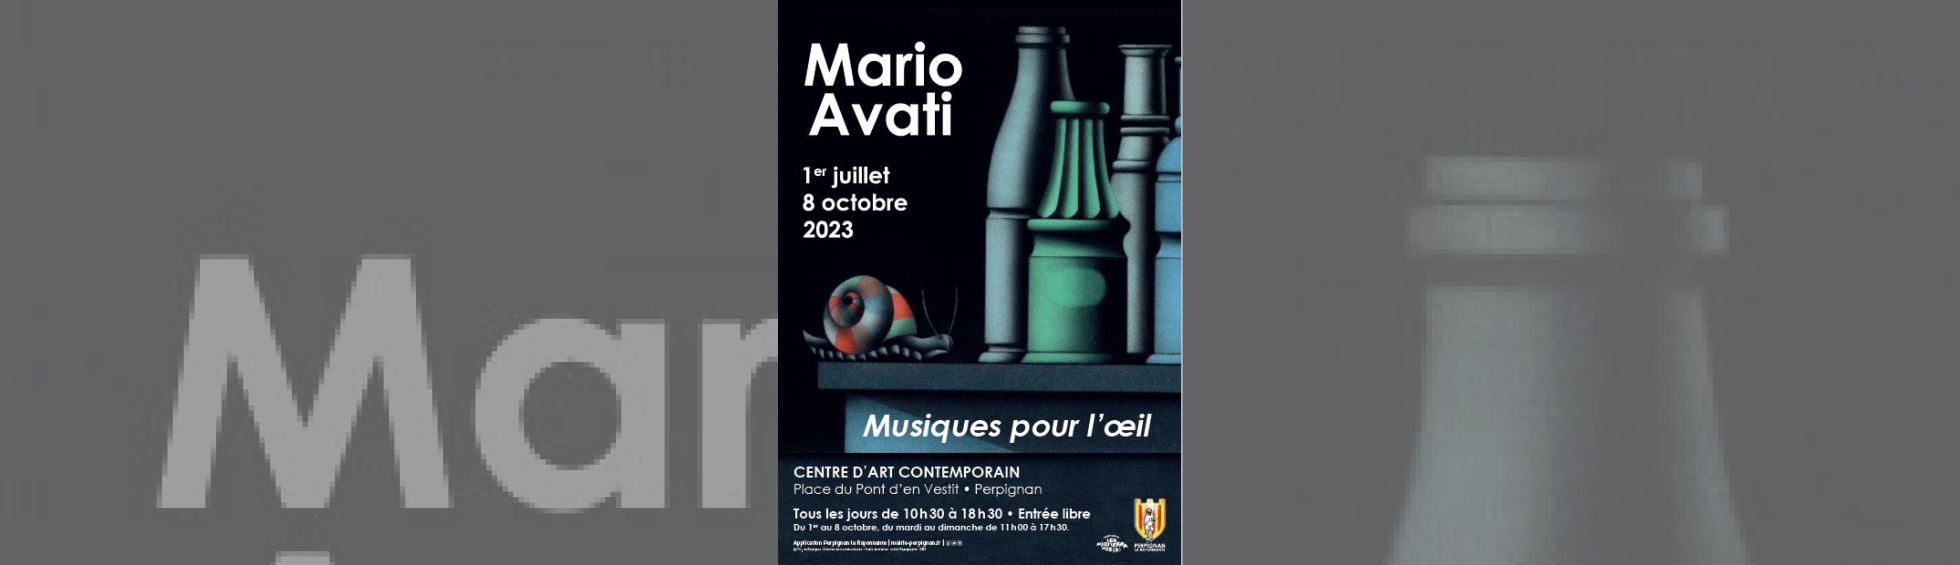 Exposition " Musiques pour l'oeil" de Mario Avati